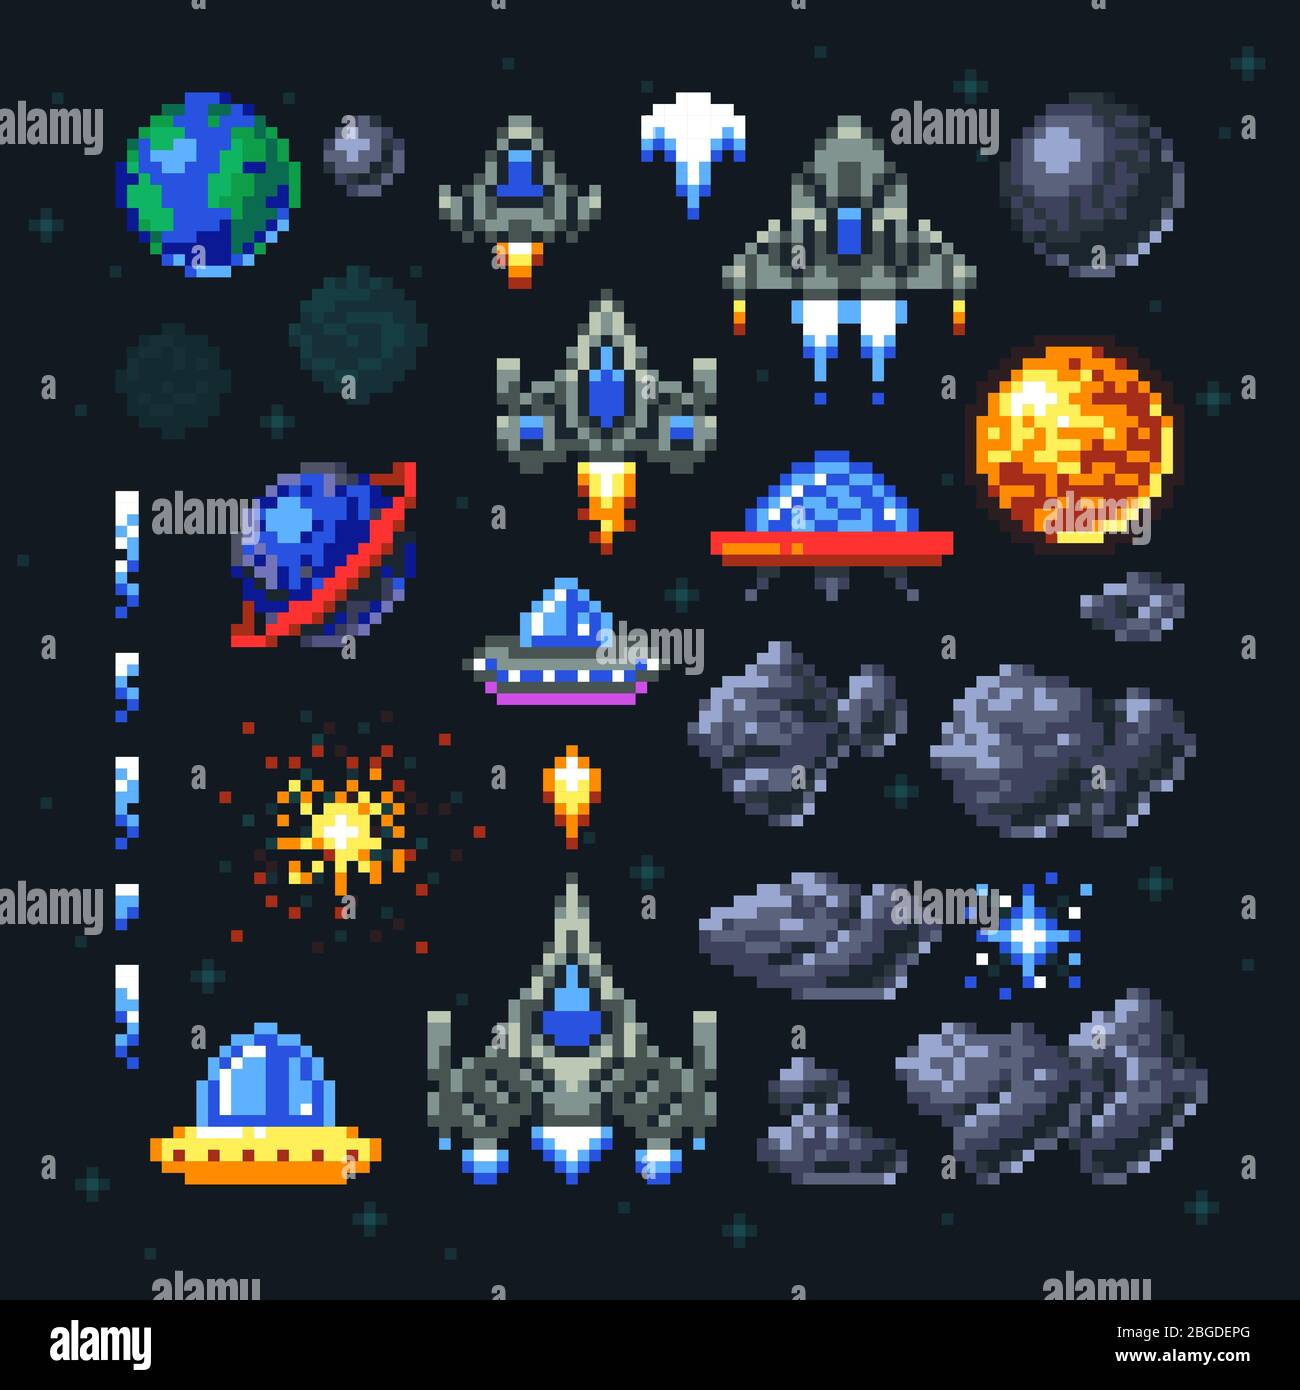 Elementi pixel spazio arcade retrò. Invasori, navicelle, pianeti e set di vettori ufo. Video arcade gioco in pixel art, illustrazione di astronave e razzo invasore Illustrazione Vettoriale